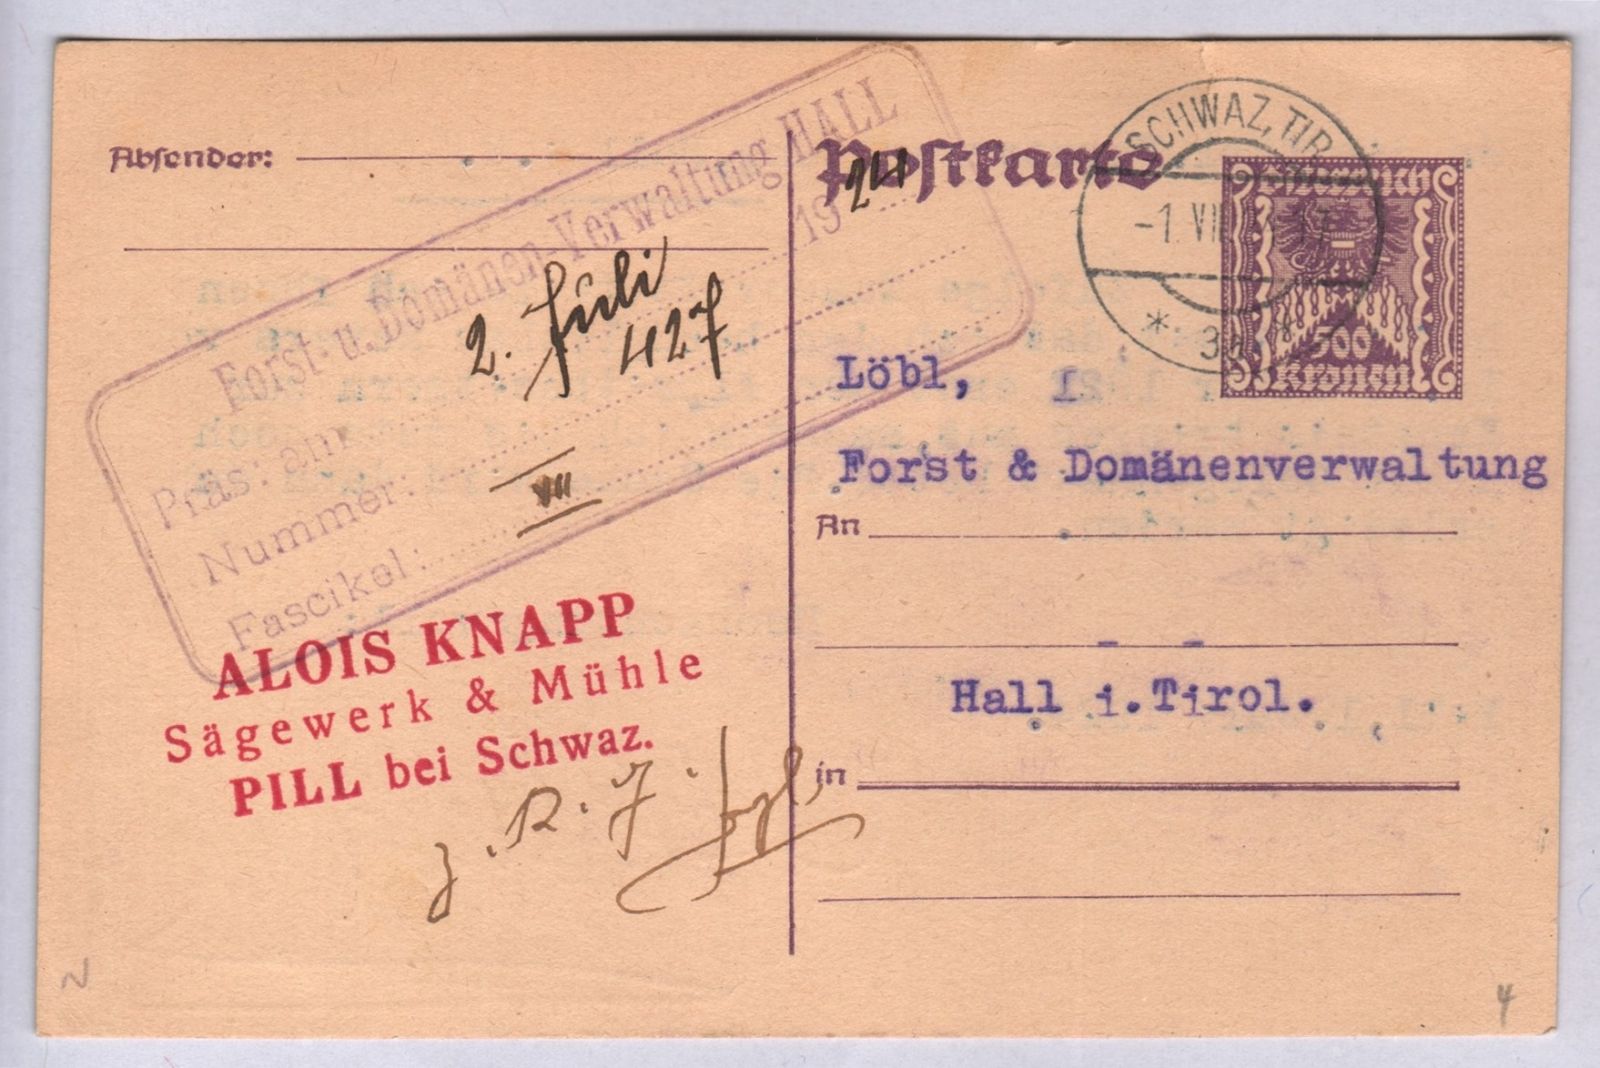 Pill Postkarte Alois Knapp